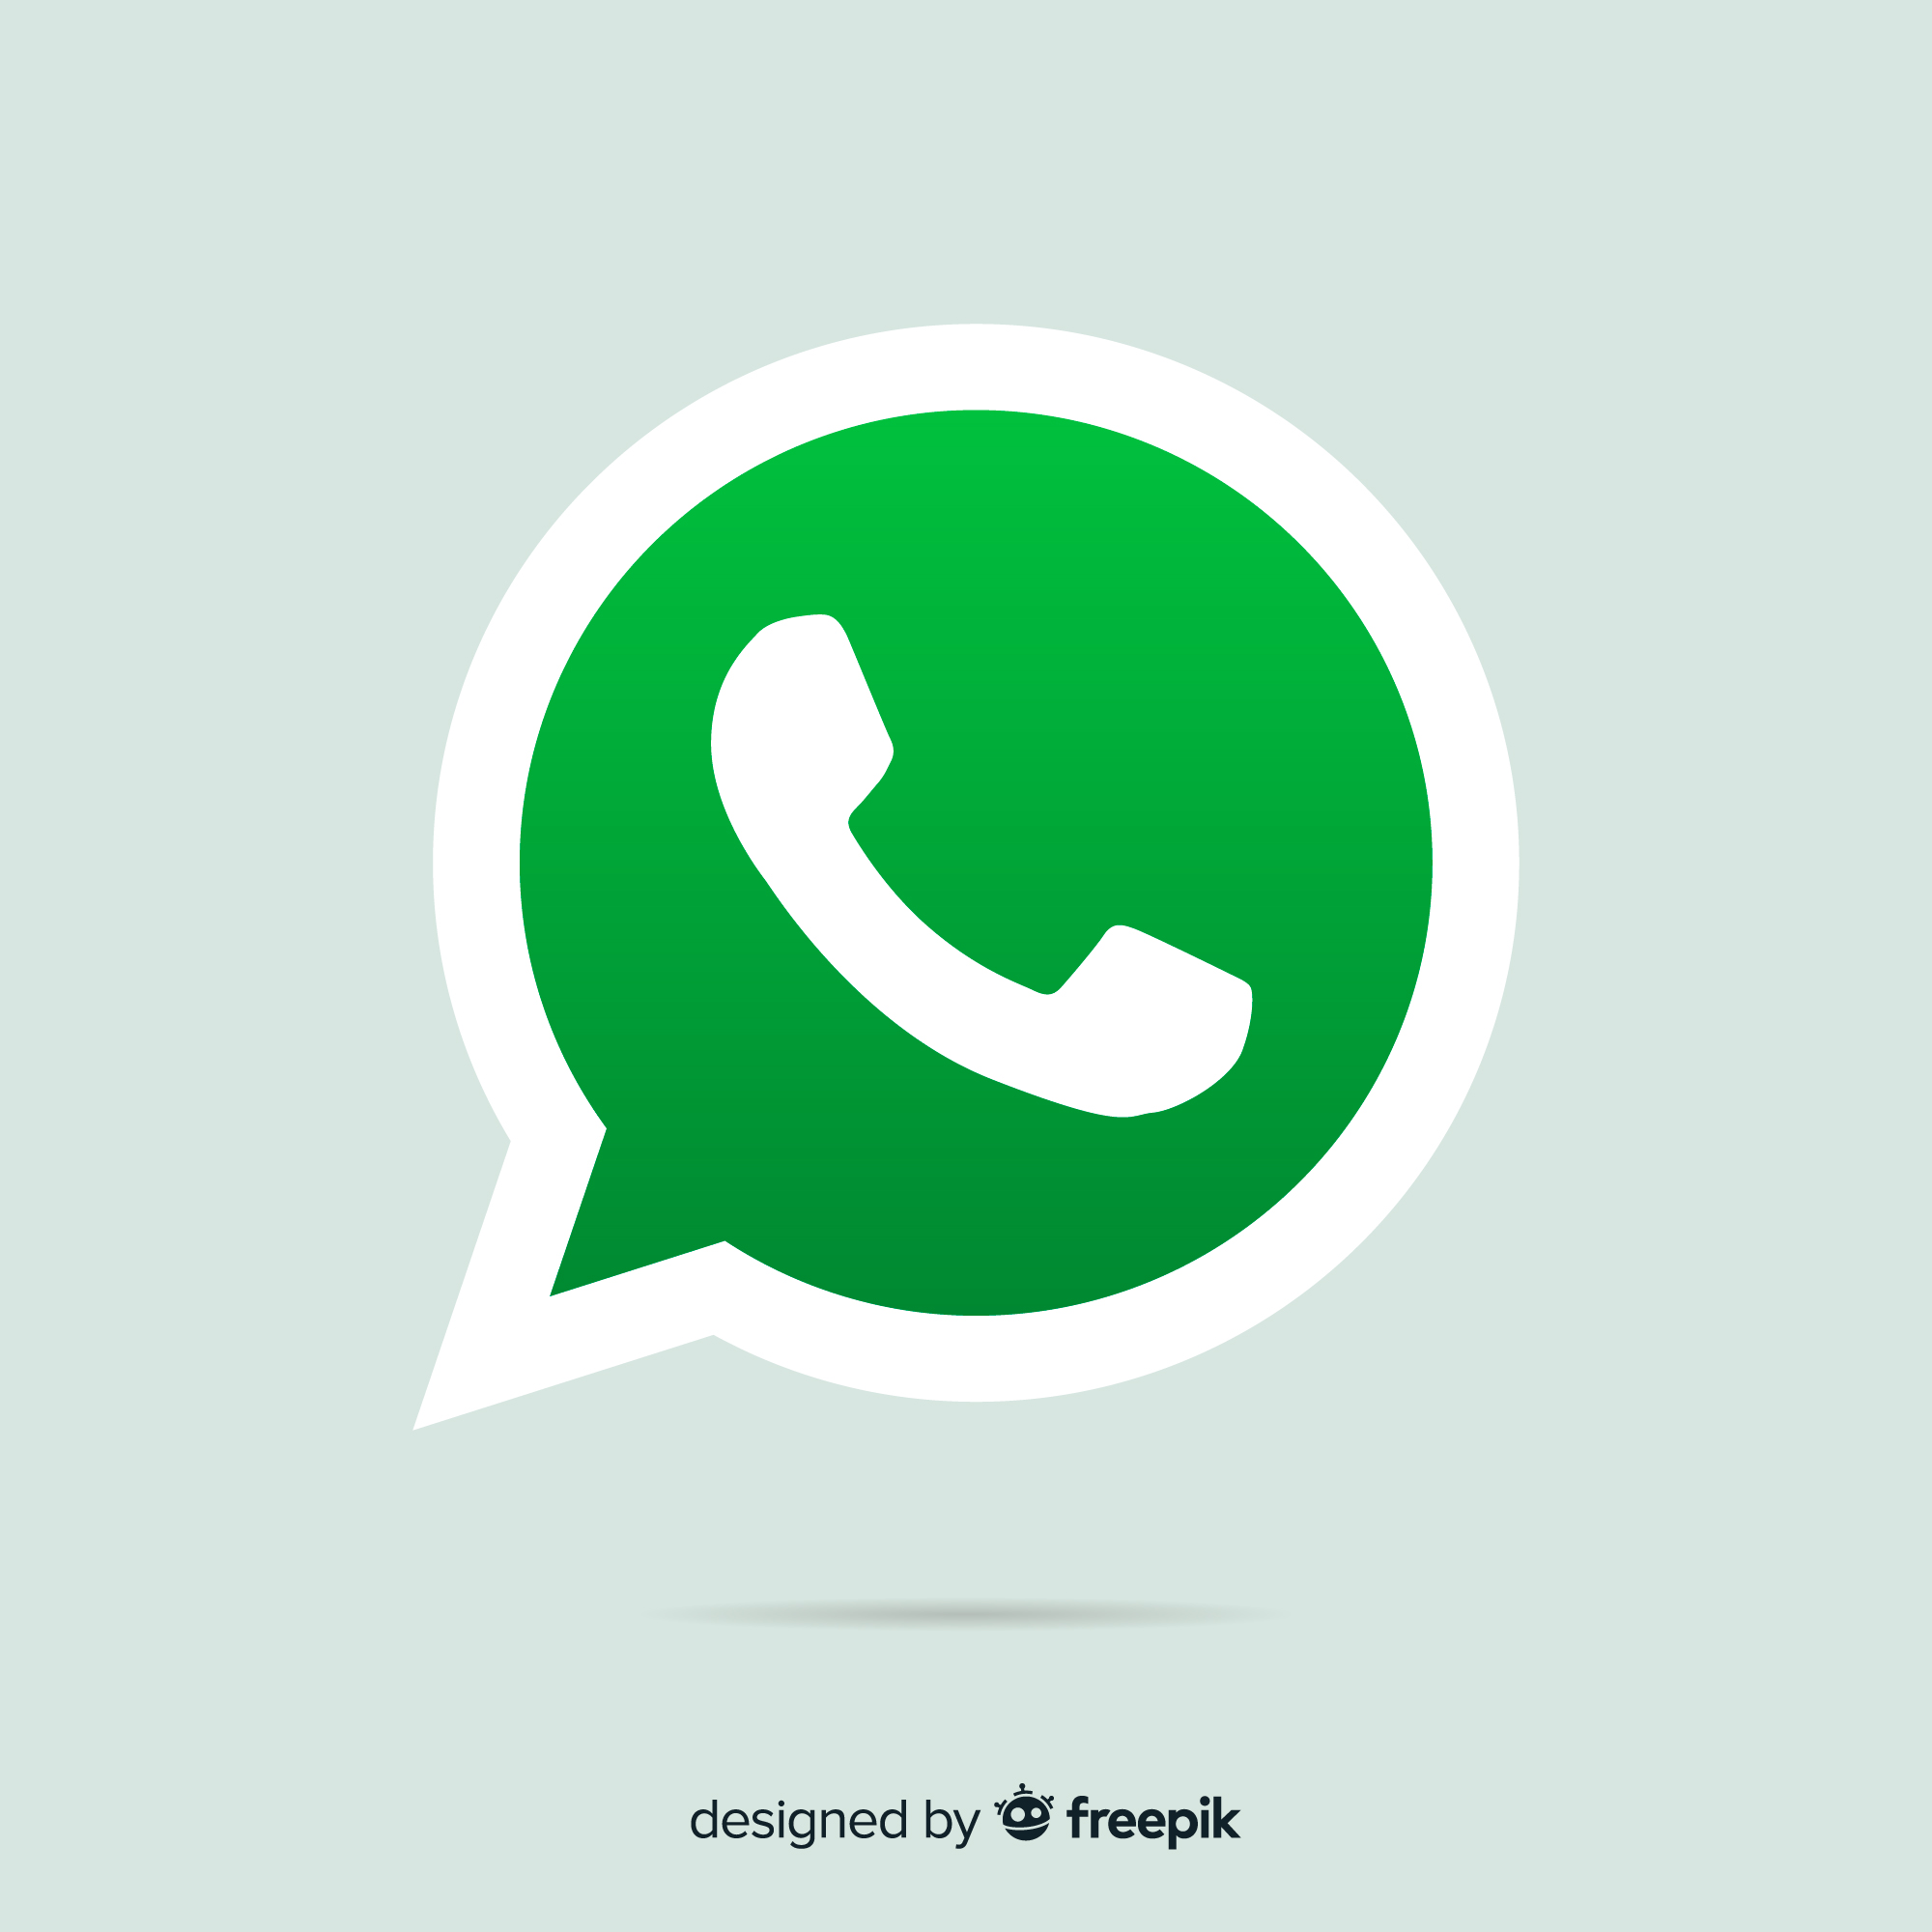 Sudah Tahu Belum? Ini 4 Fitur Whatsapp Terbaru yang Bisa Dinikmati Pengguna: Kirim Pesan Kini Bisa Diatur 